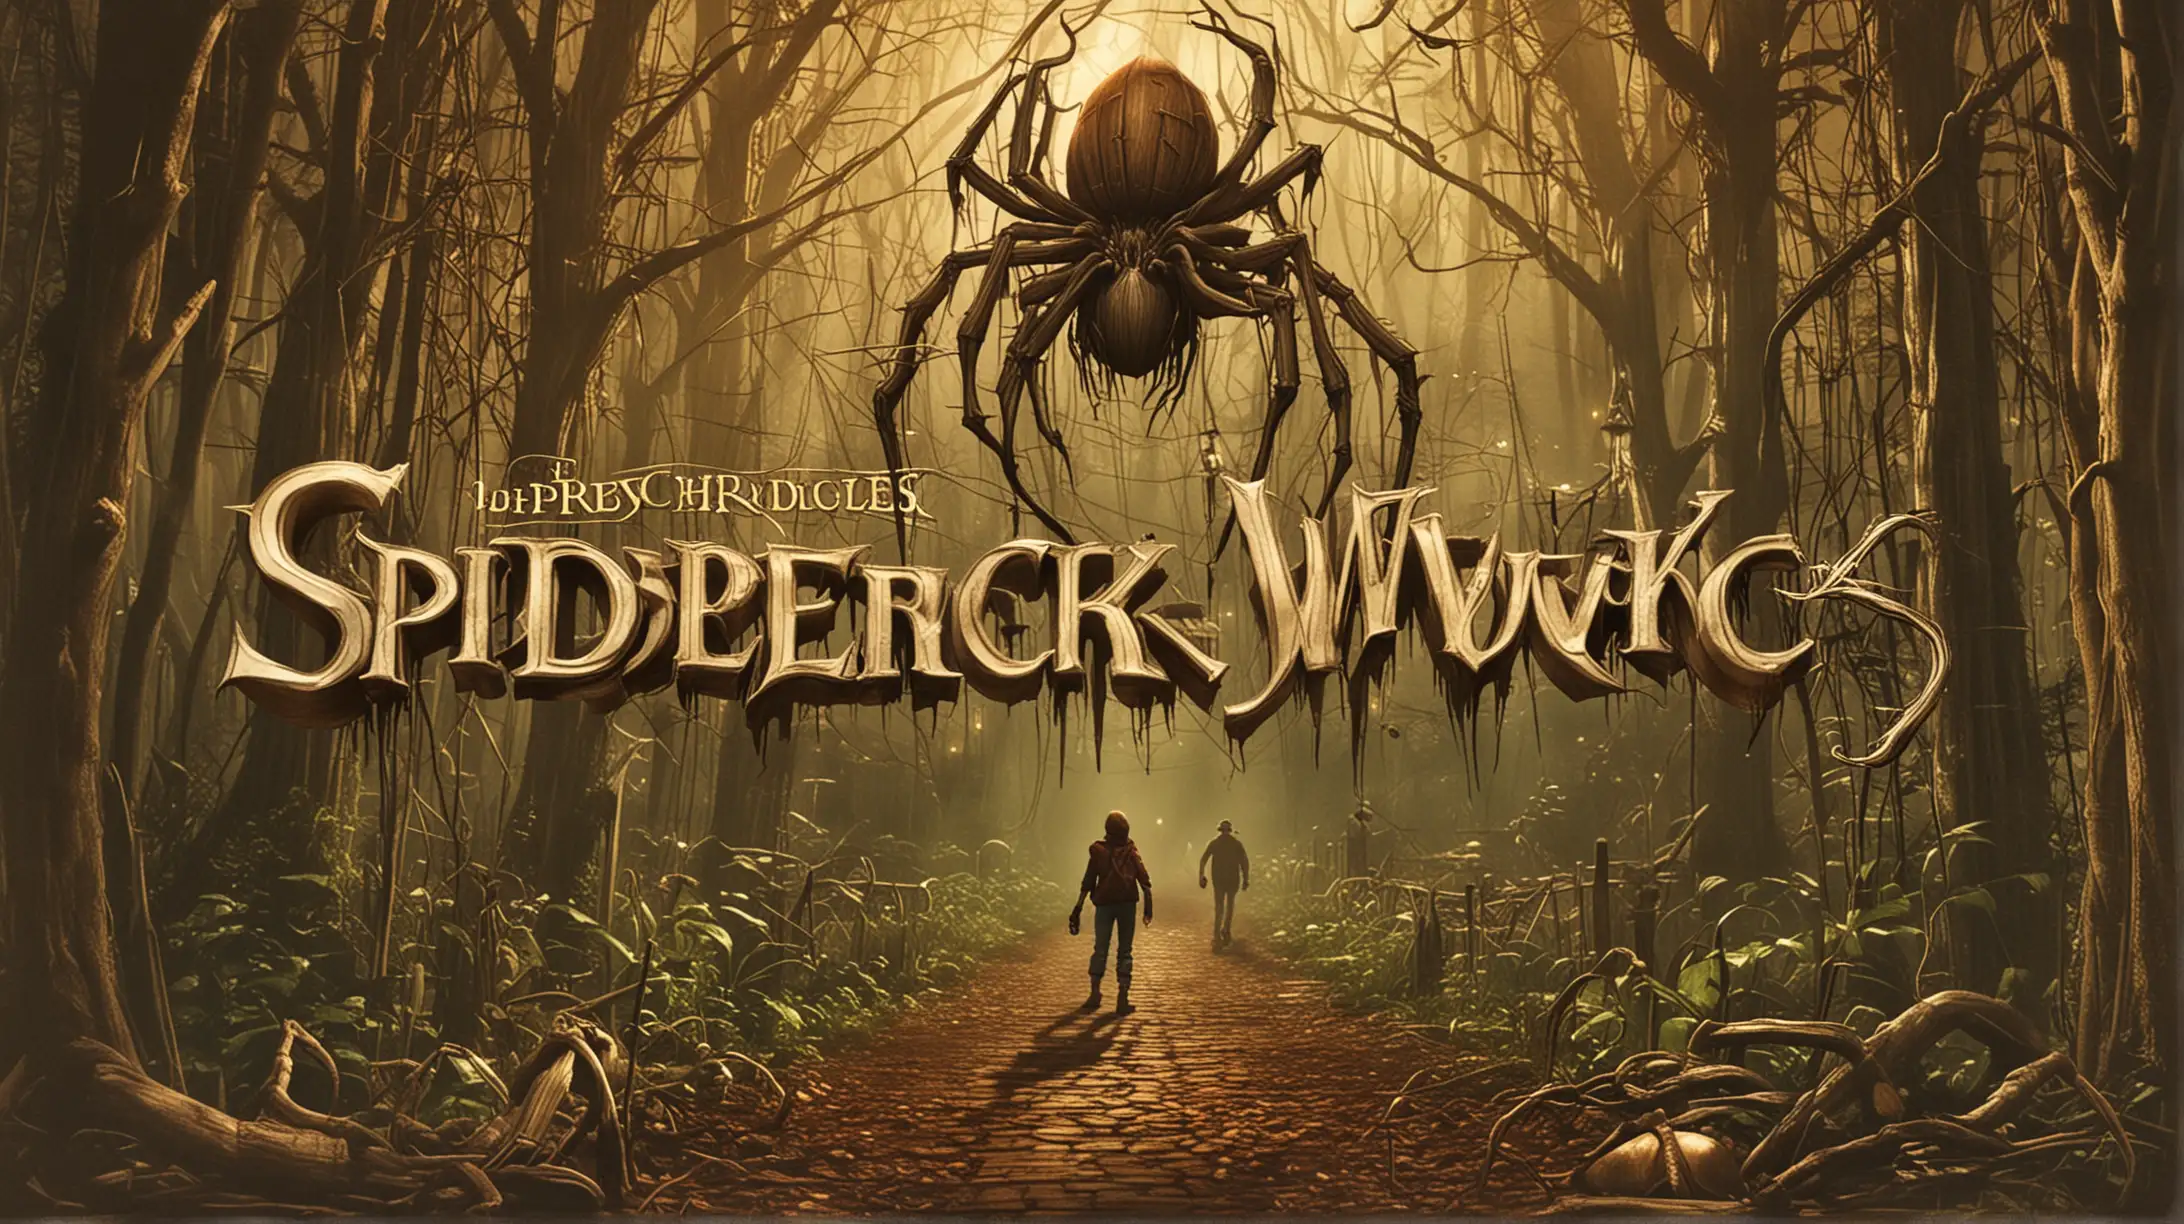 The spiderwick chronicles 